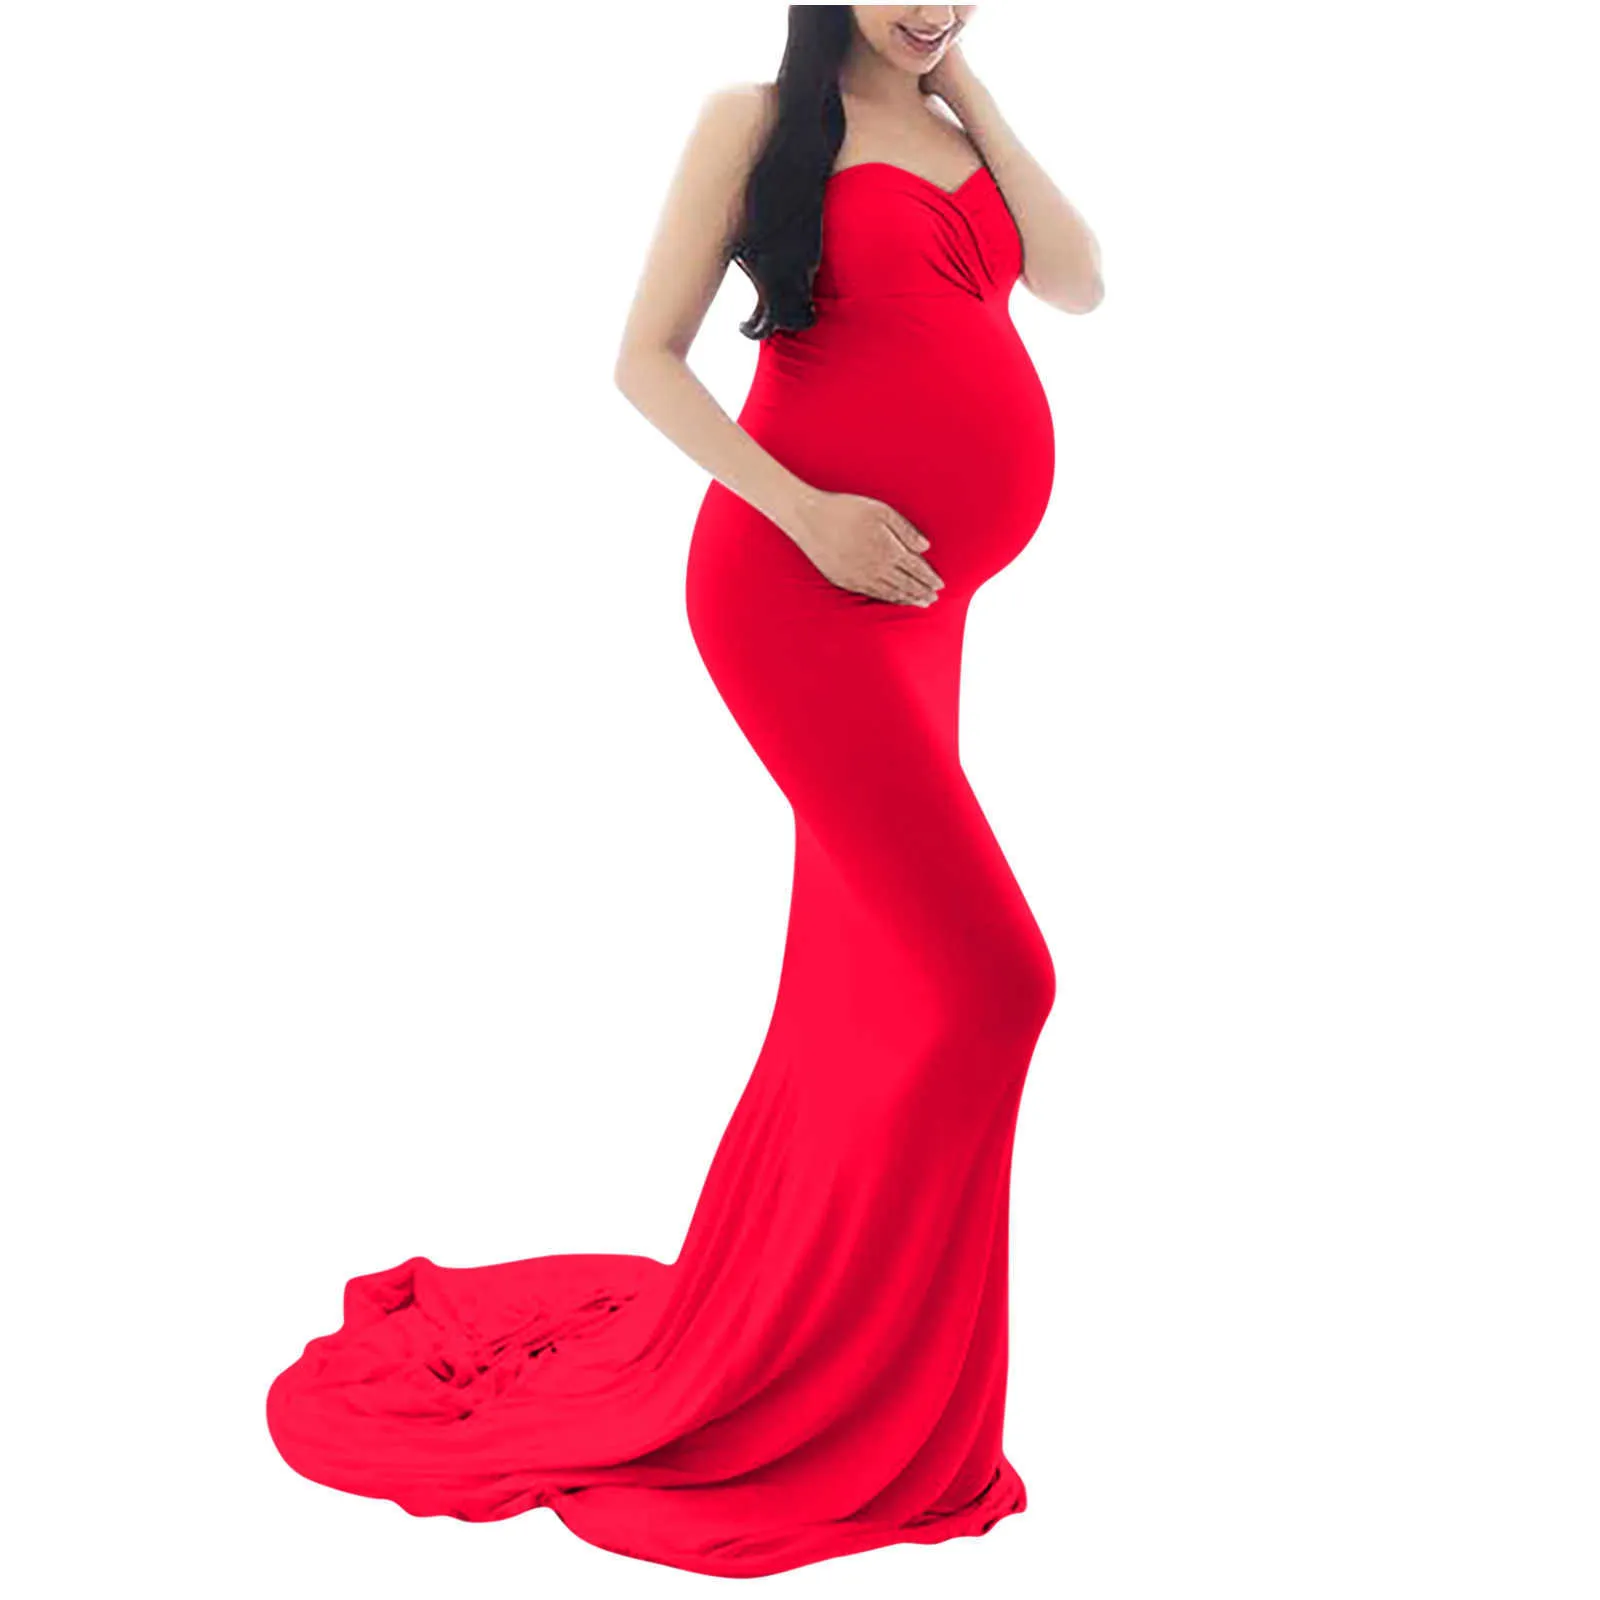 Robes de maternité sexy pour séance photo en mousseline de soie robe de grossesse photographie accessoire robe maxi robes pour femmes enceintes vêtements x0902